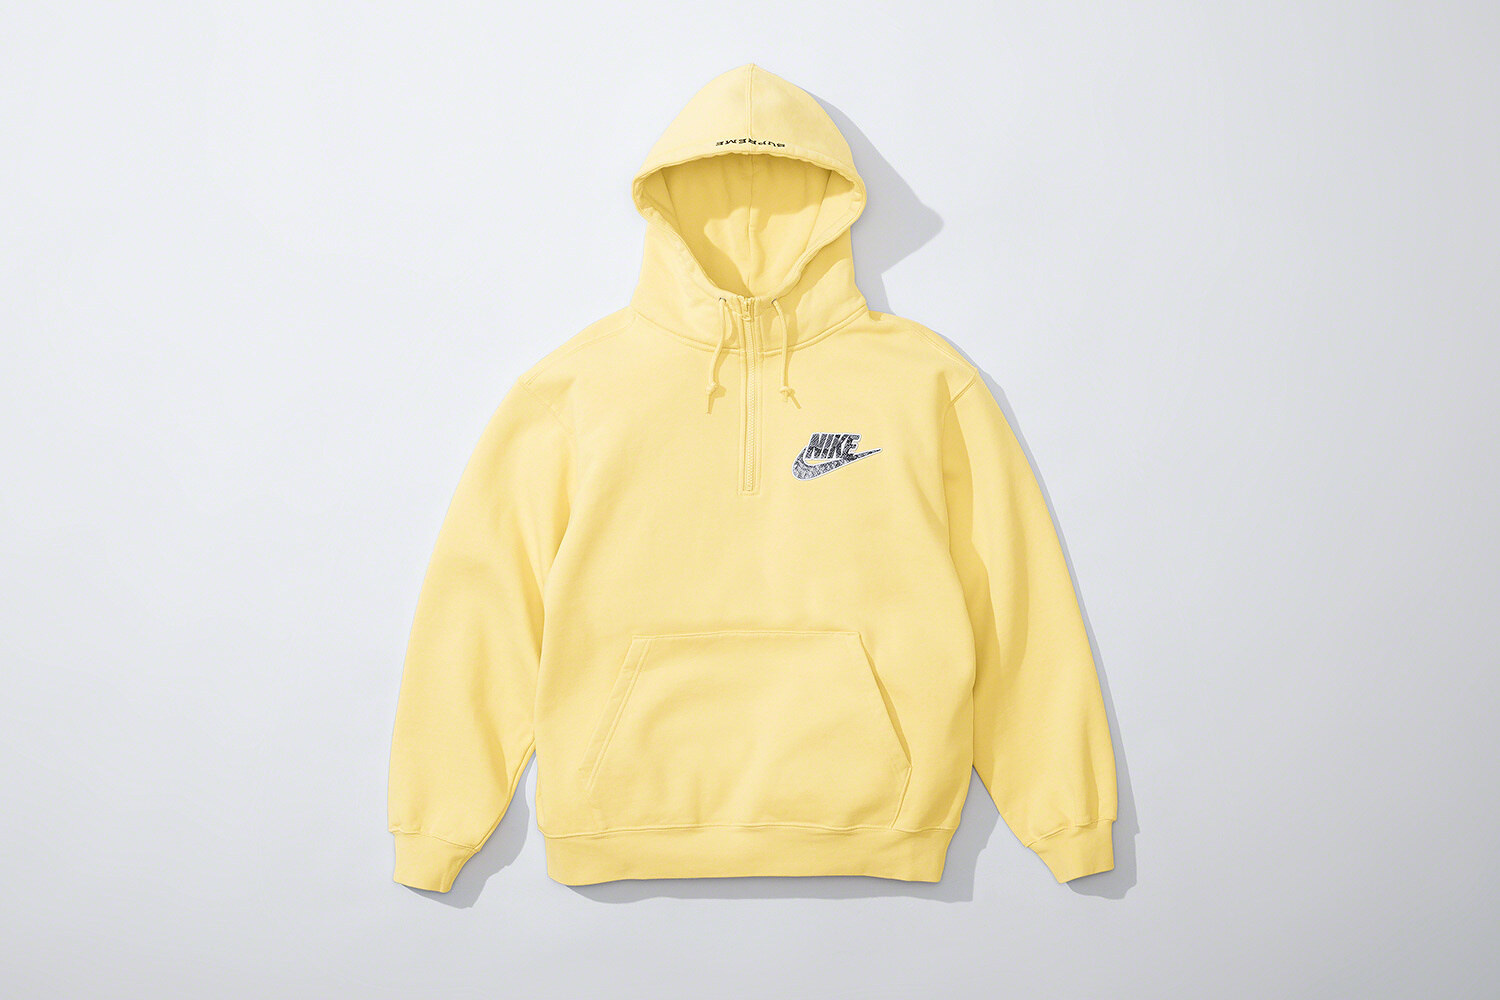 Supreme x Nike Half Zip Hooded Sweatshirt